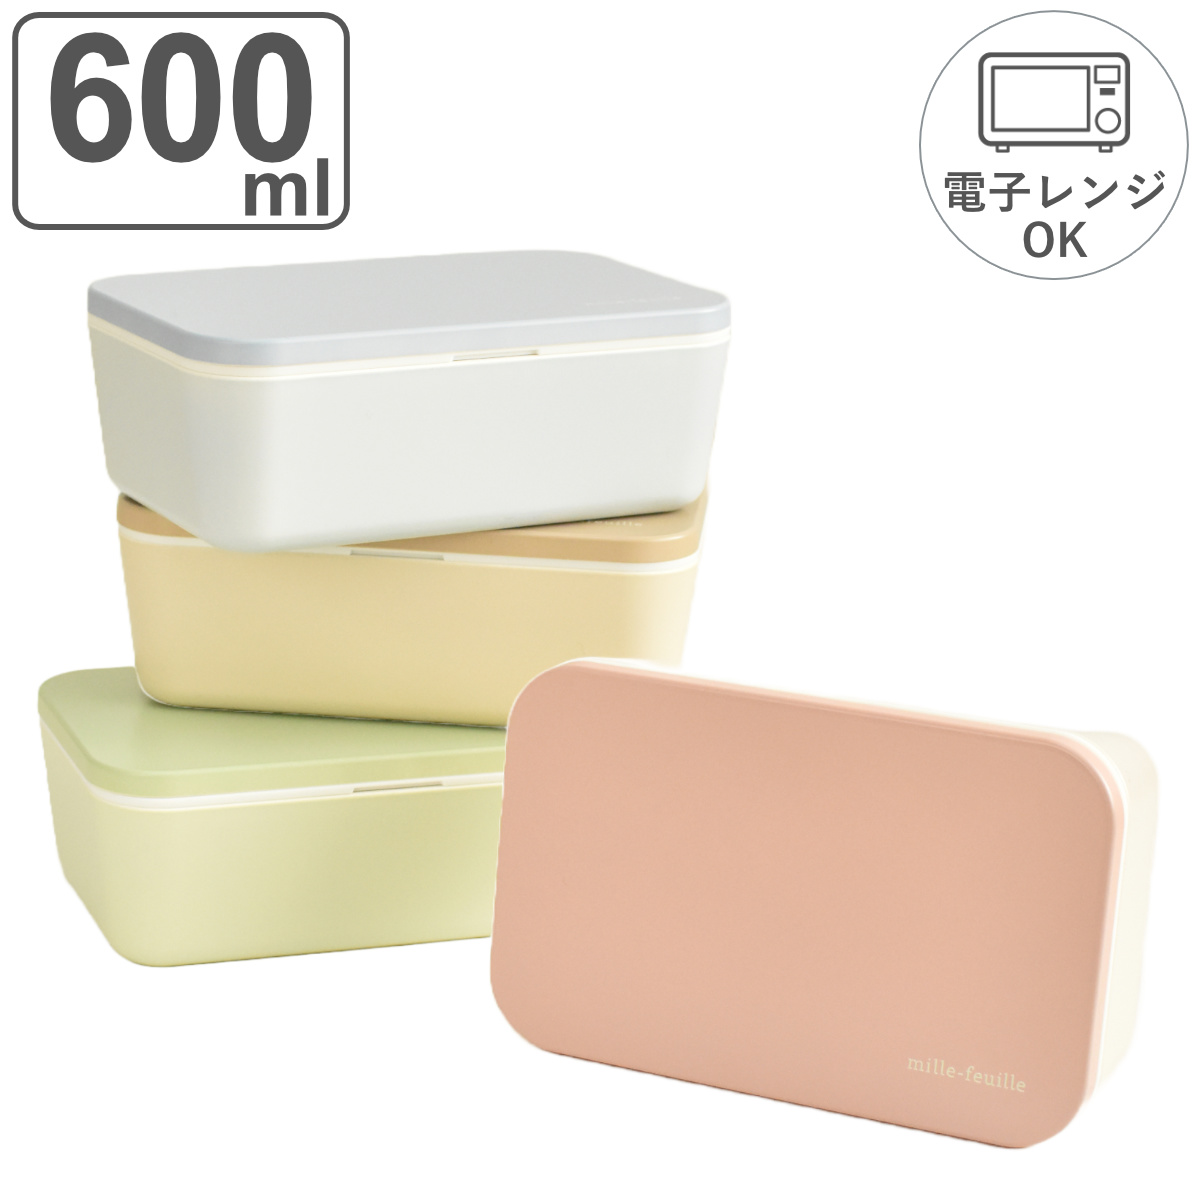 お弁当箱 mille-feuille シンプルランチBOX 1段 600ml